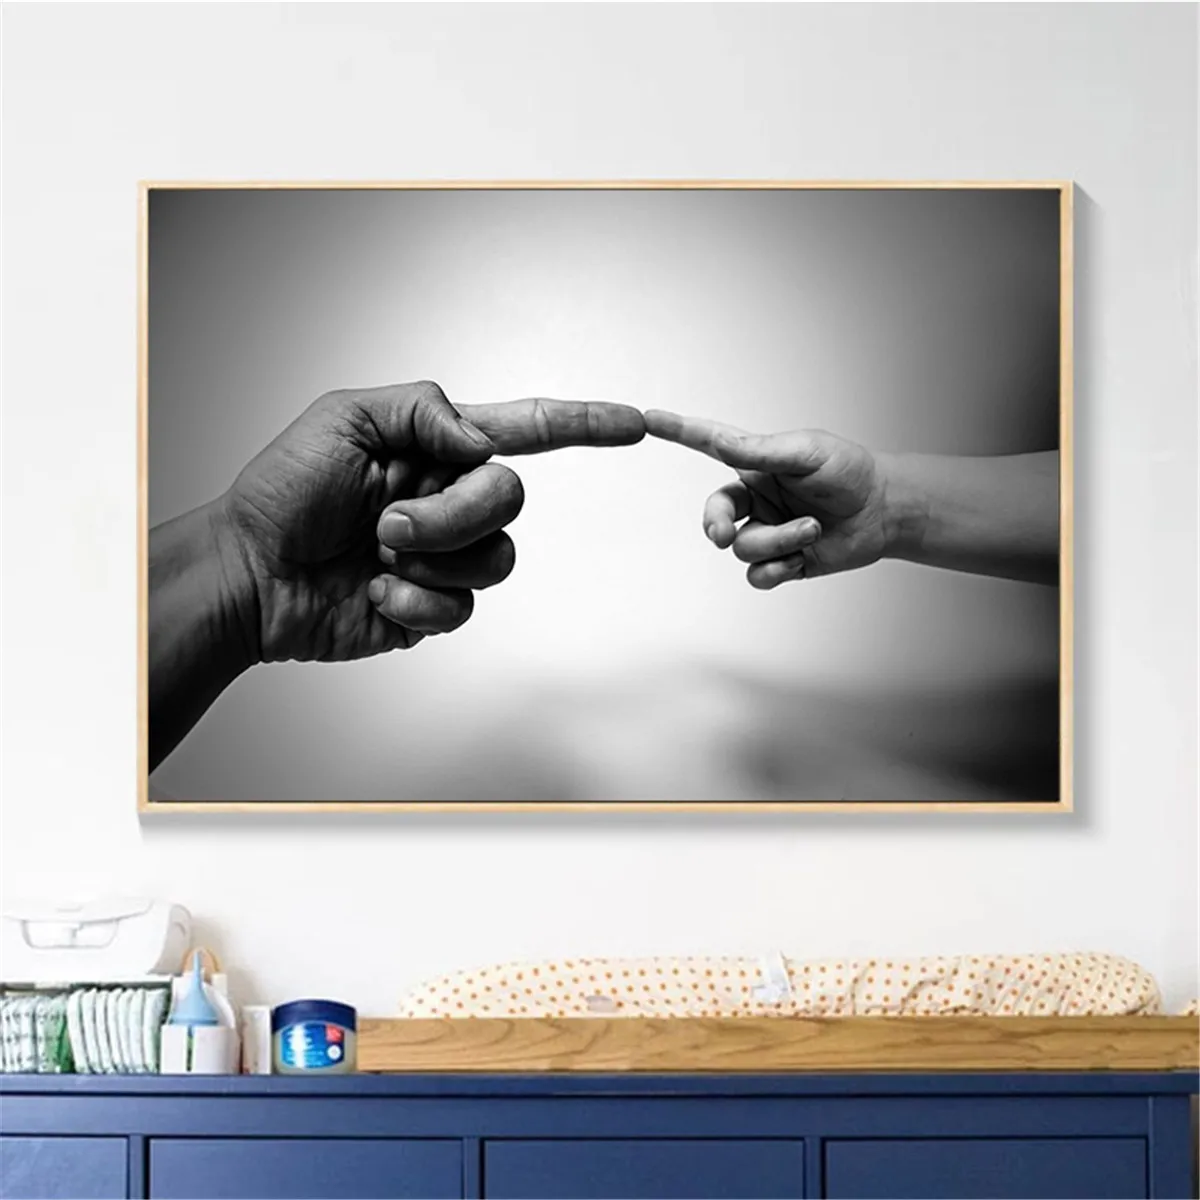 Черно-белая фотография толпа аудитория Микеланджело концепция пальцы плакат